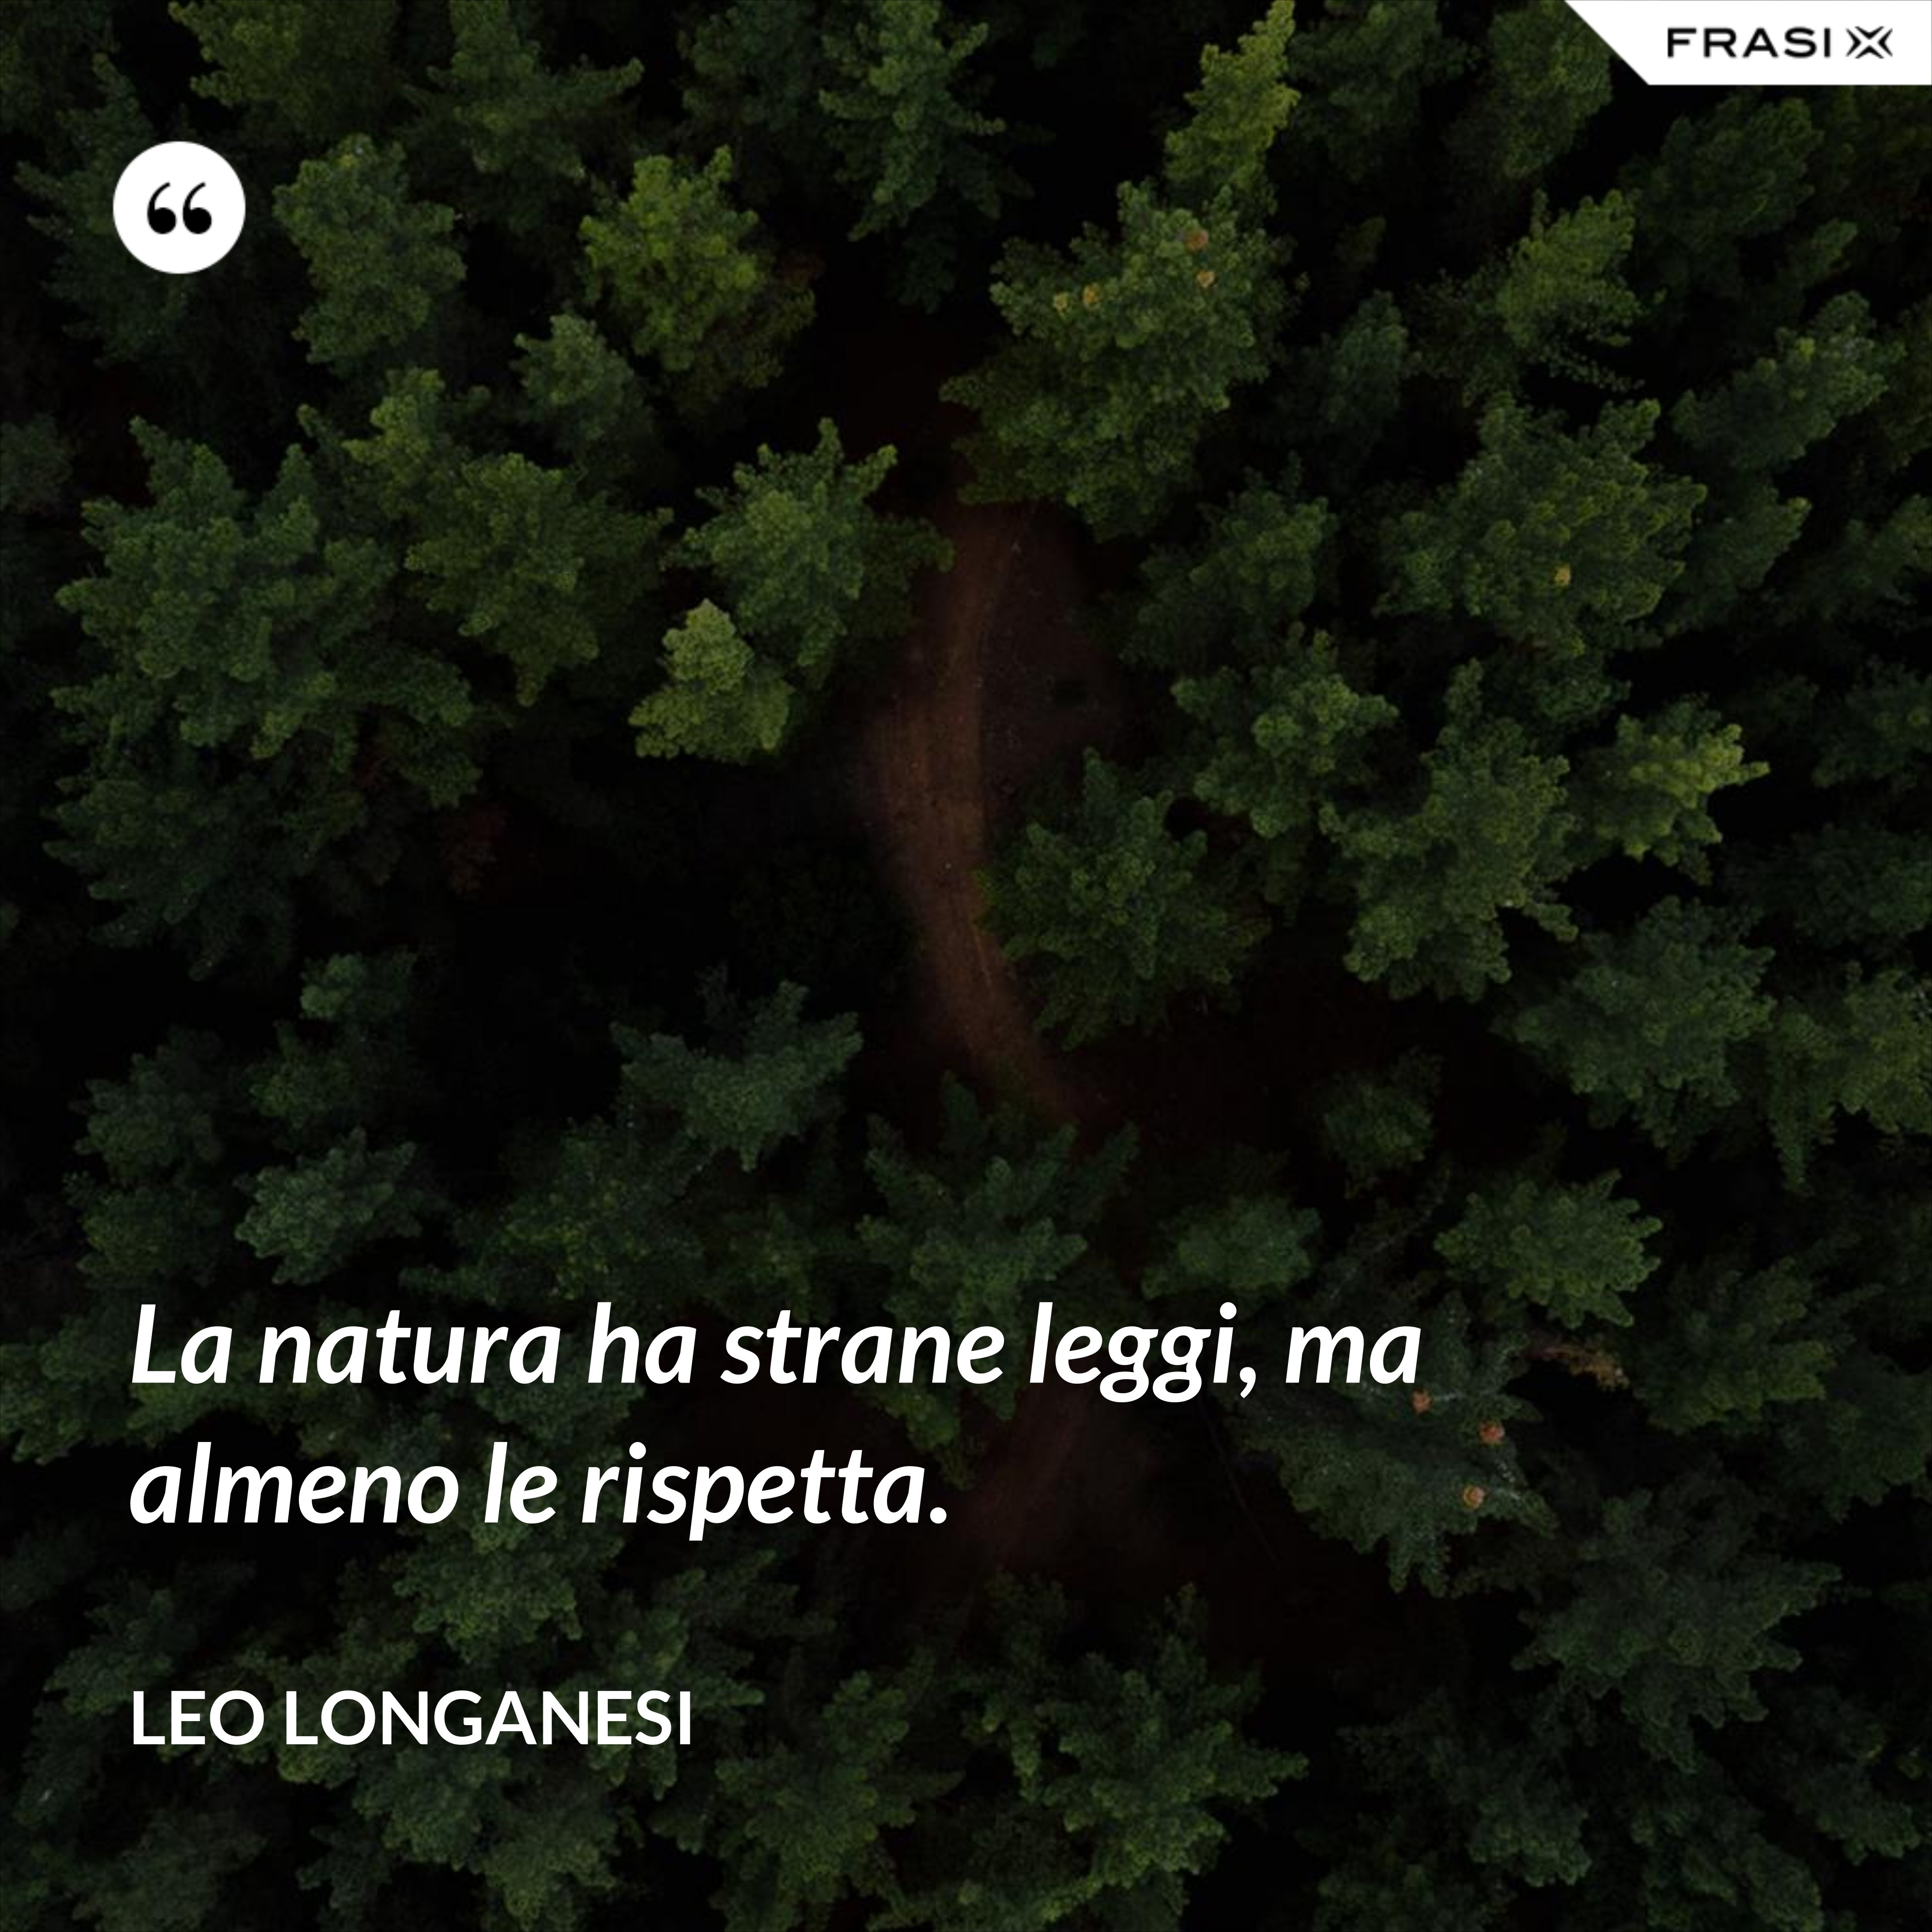 La natura ha strane leggi, ma almeno le rispetta. - Leo Longanesi